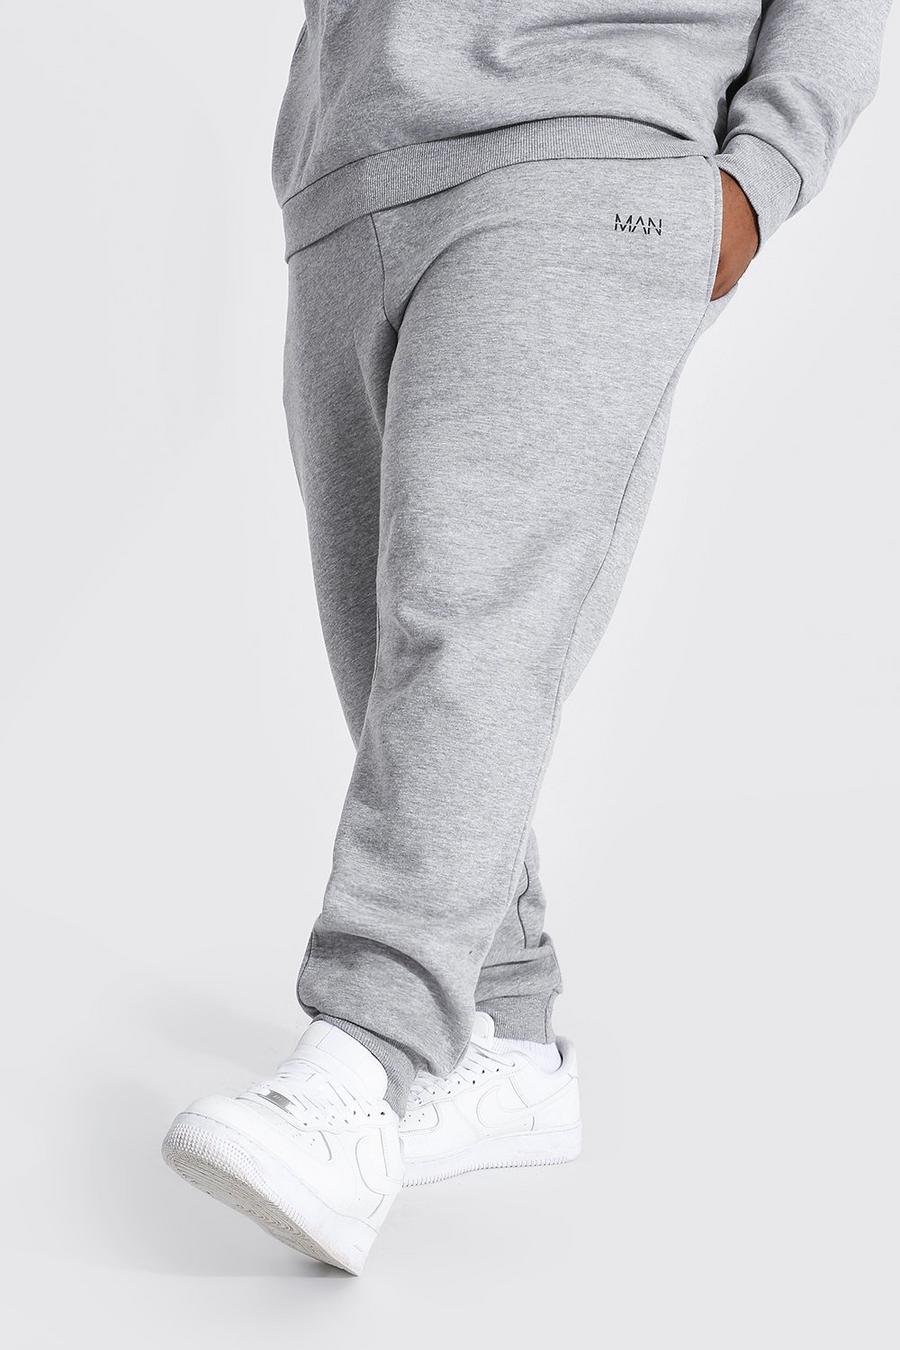 Pantalón deportivo Plus MAN ajustado reciclado, Grey marl gris image number 1